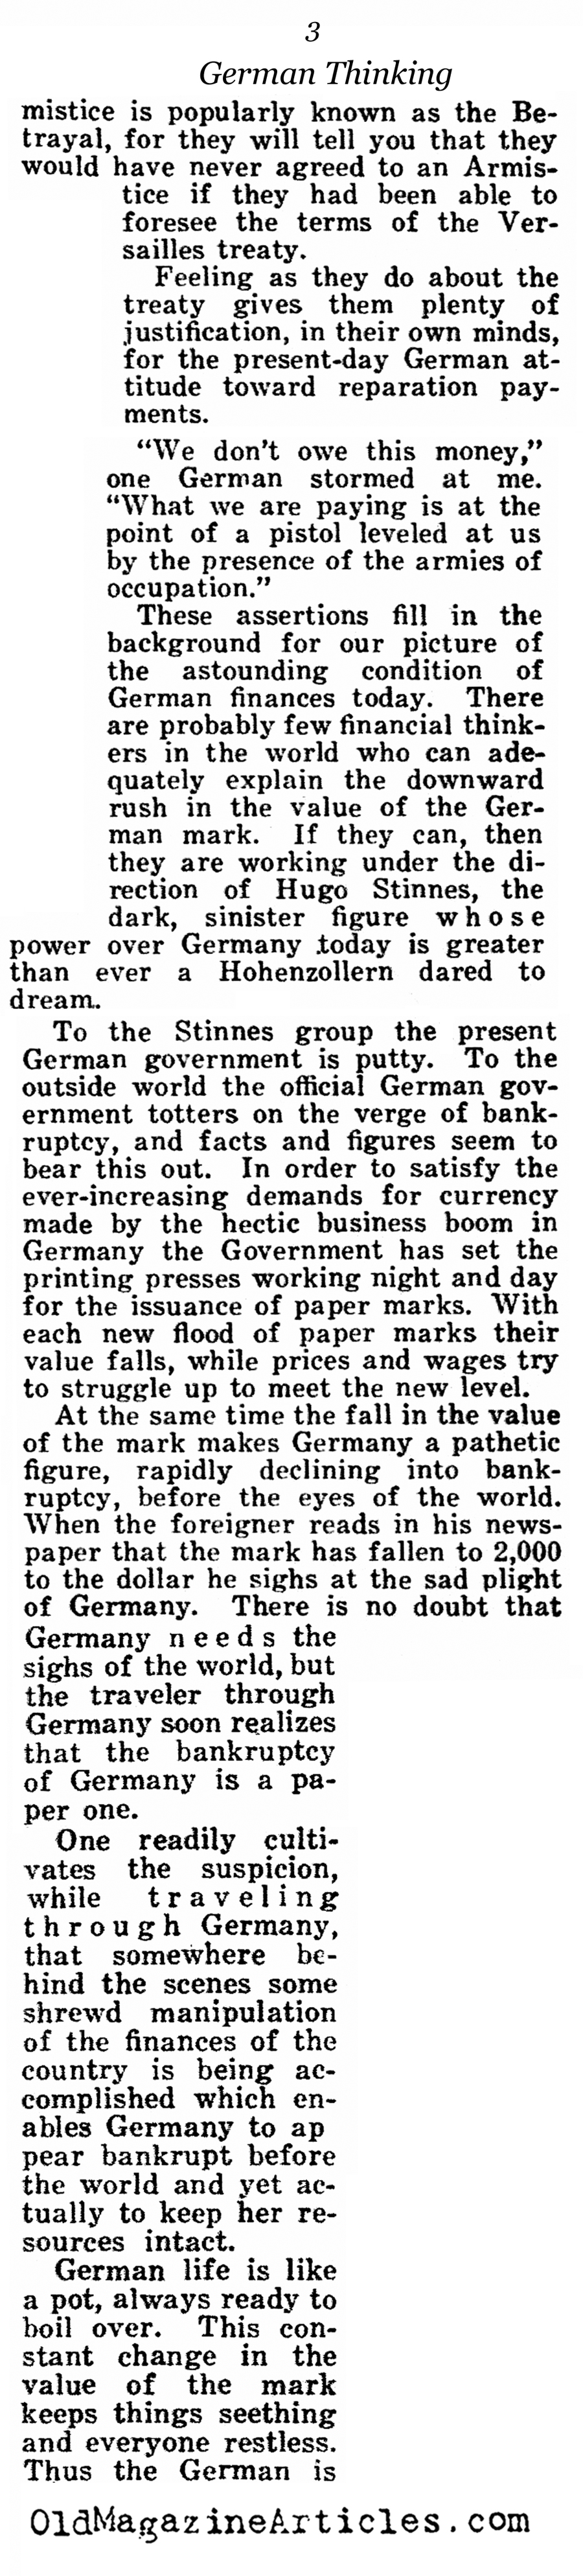 German Post-War Thinking (American Legion Weekly, 1922)